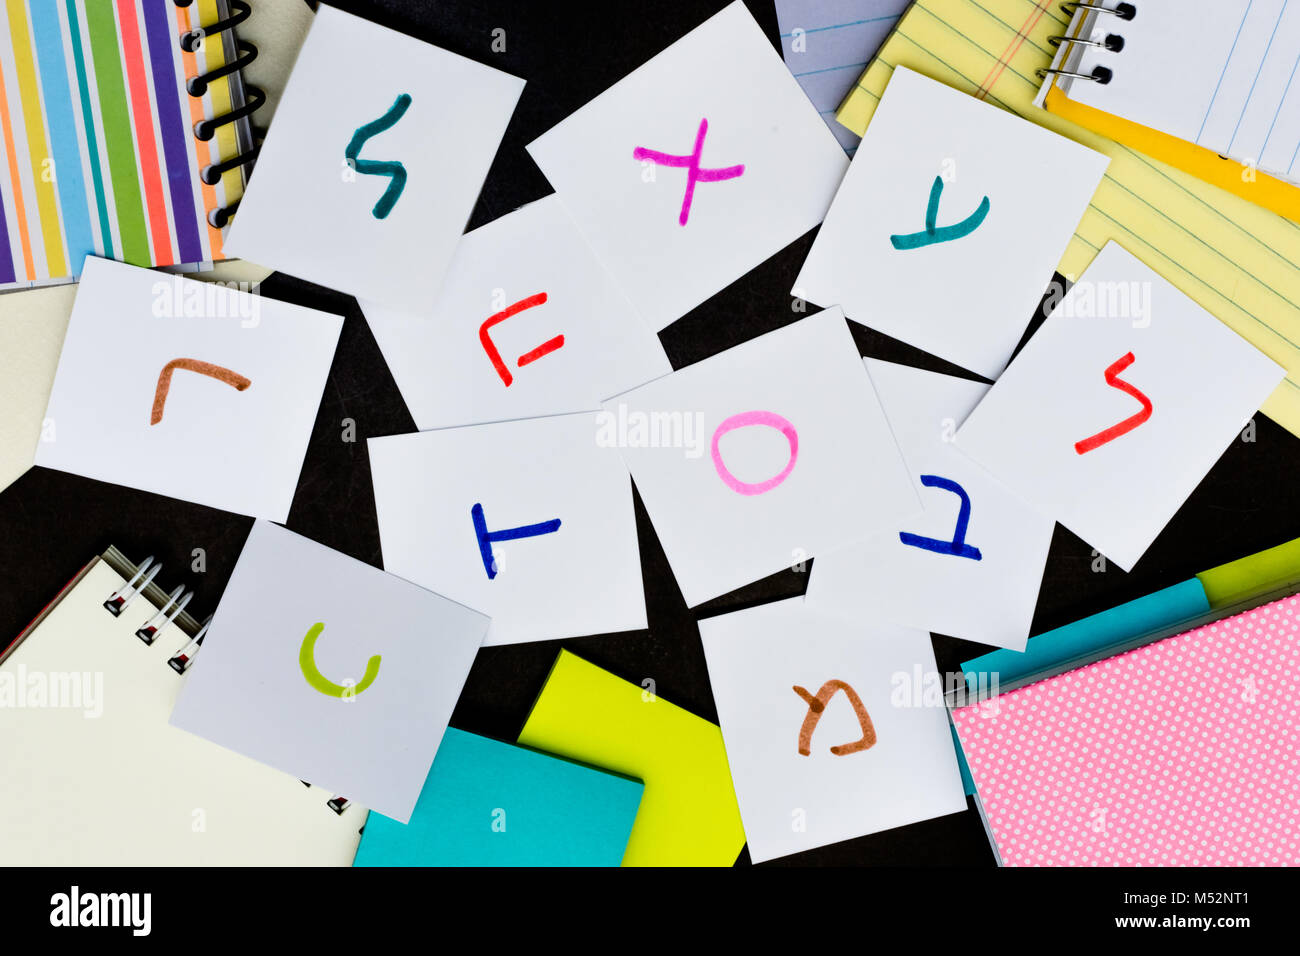 Hebräisch, lernen Sprache mit handschriftlichen Alphabet Charakter Karten Stockfoto